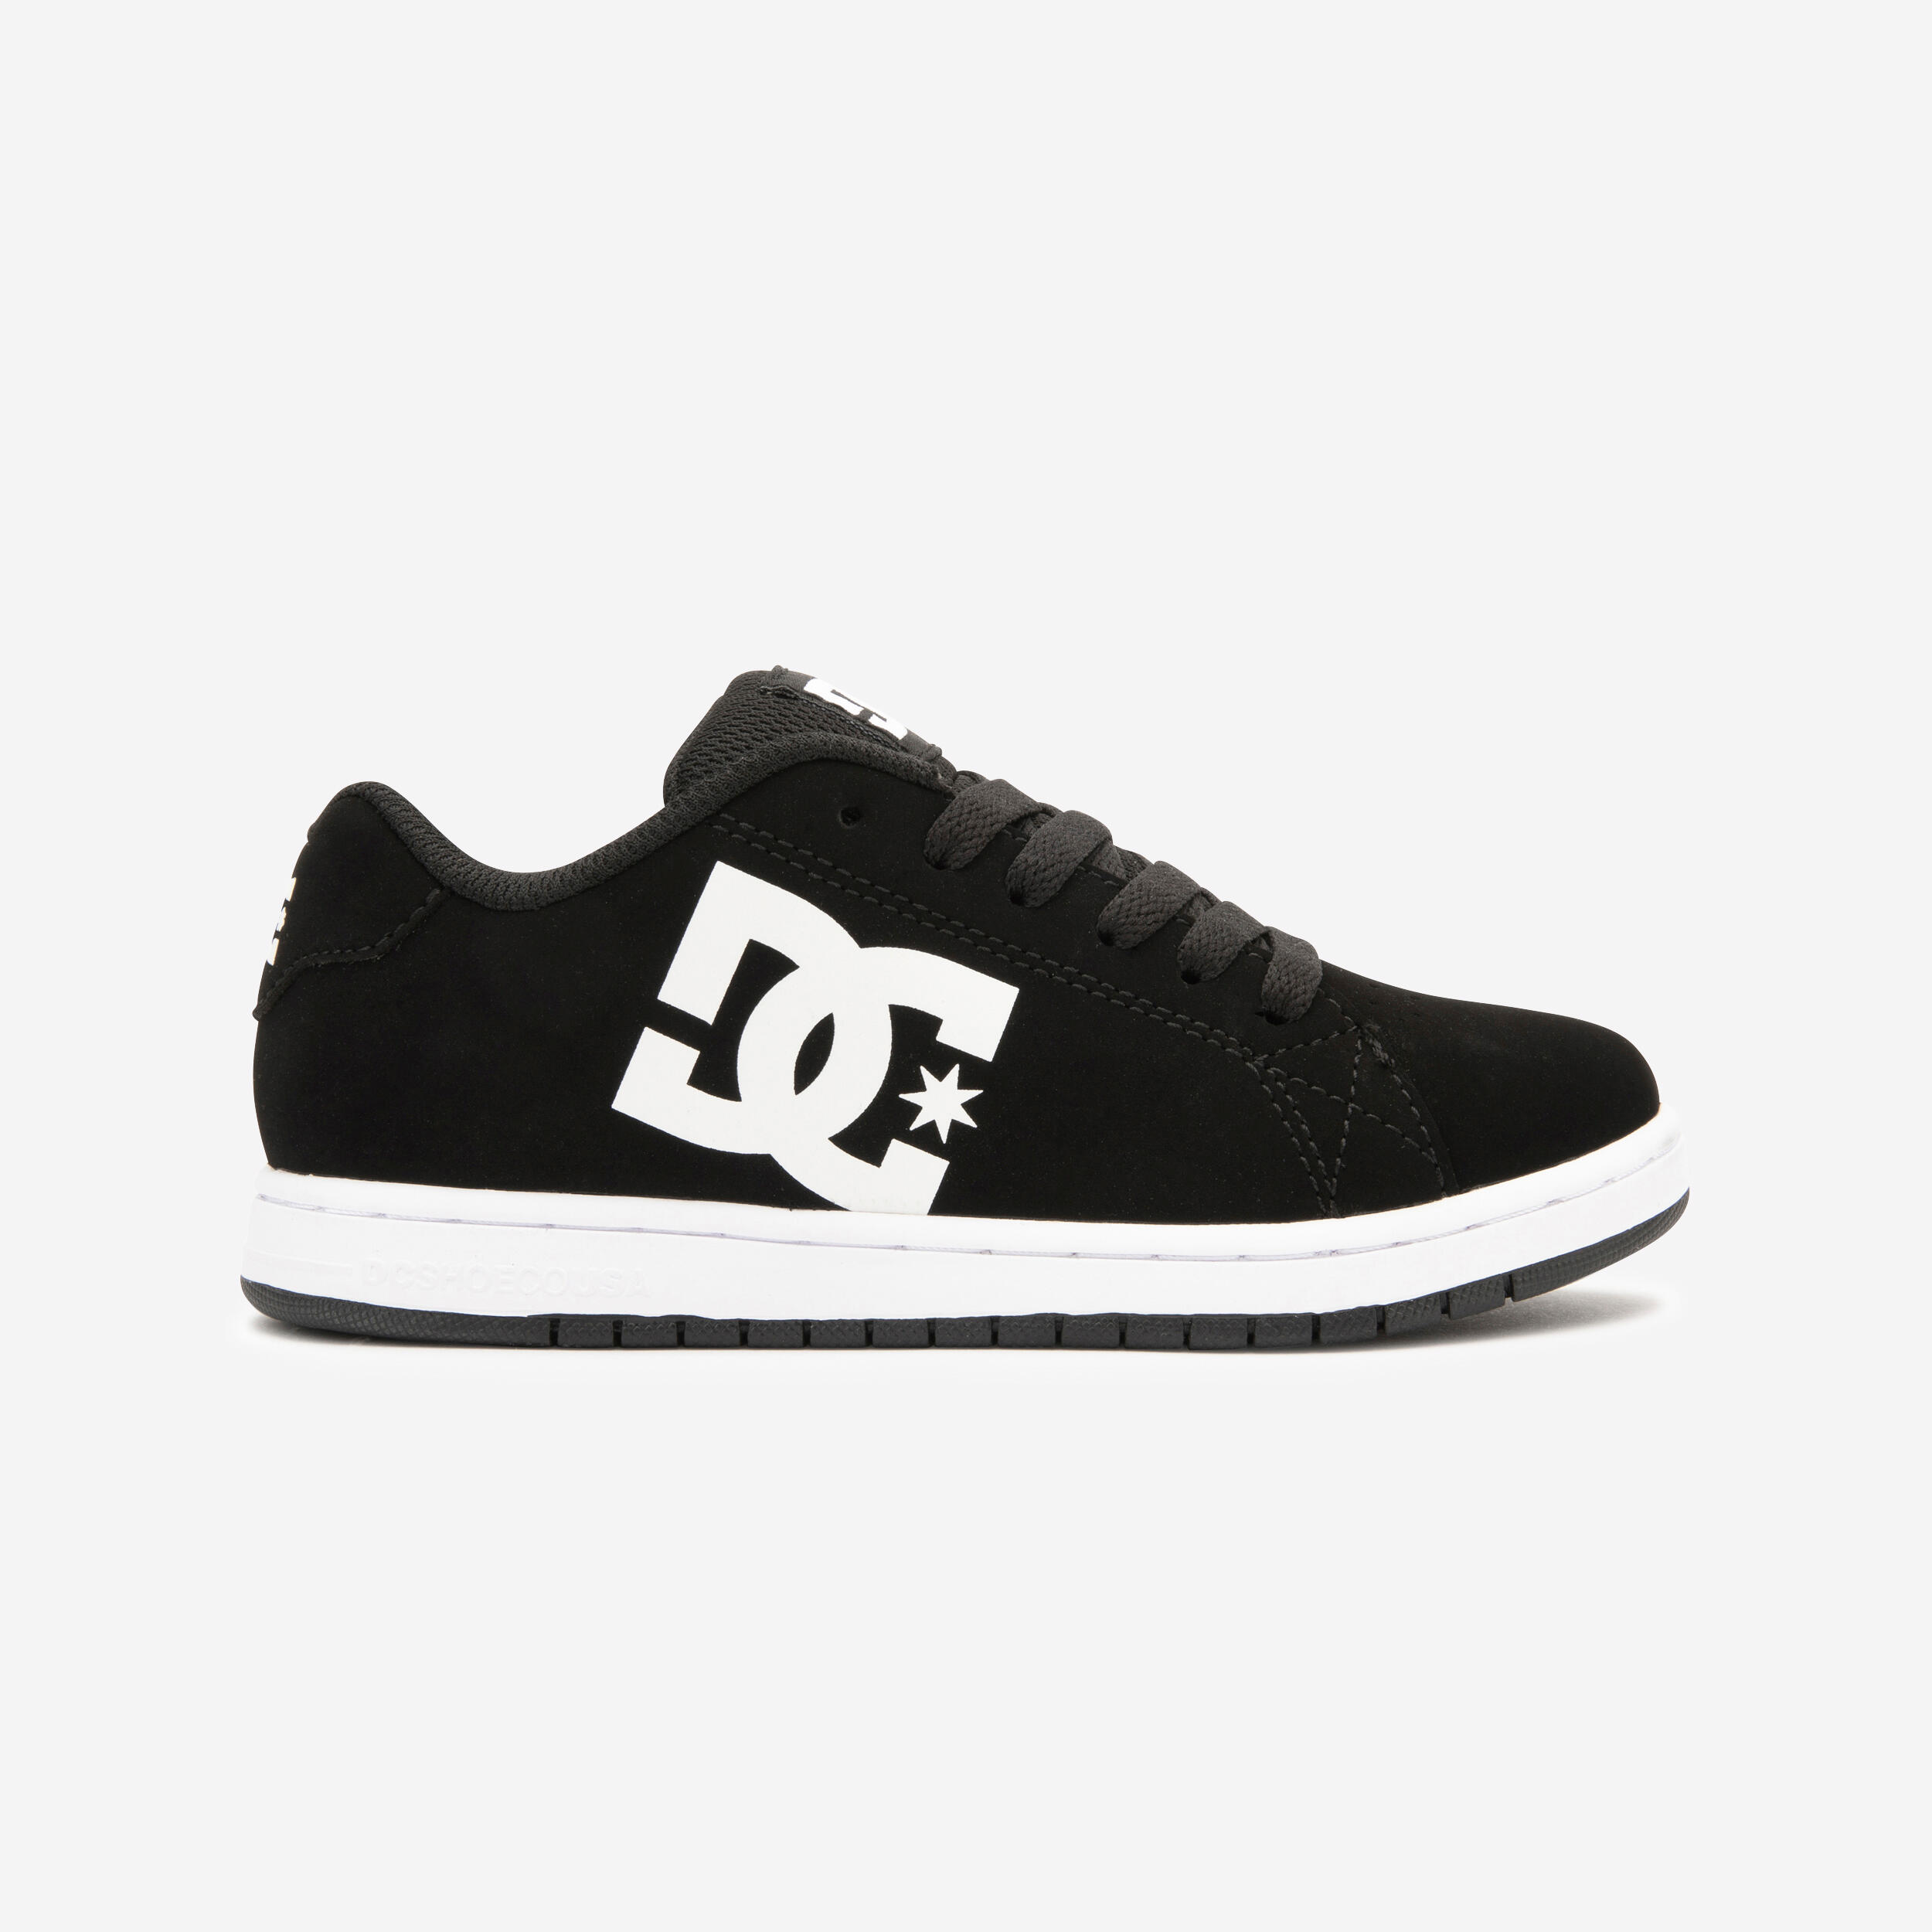 Kids' Skateboarding Shoes Gaveler - Black/White 2/11